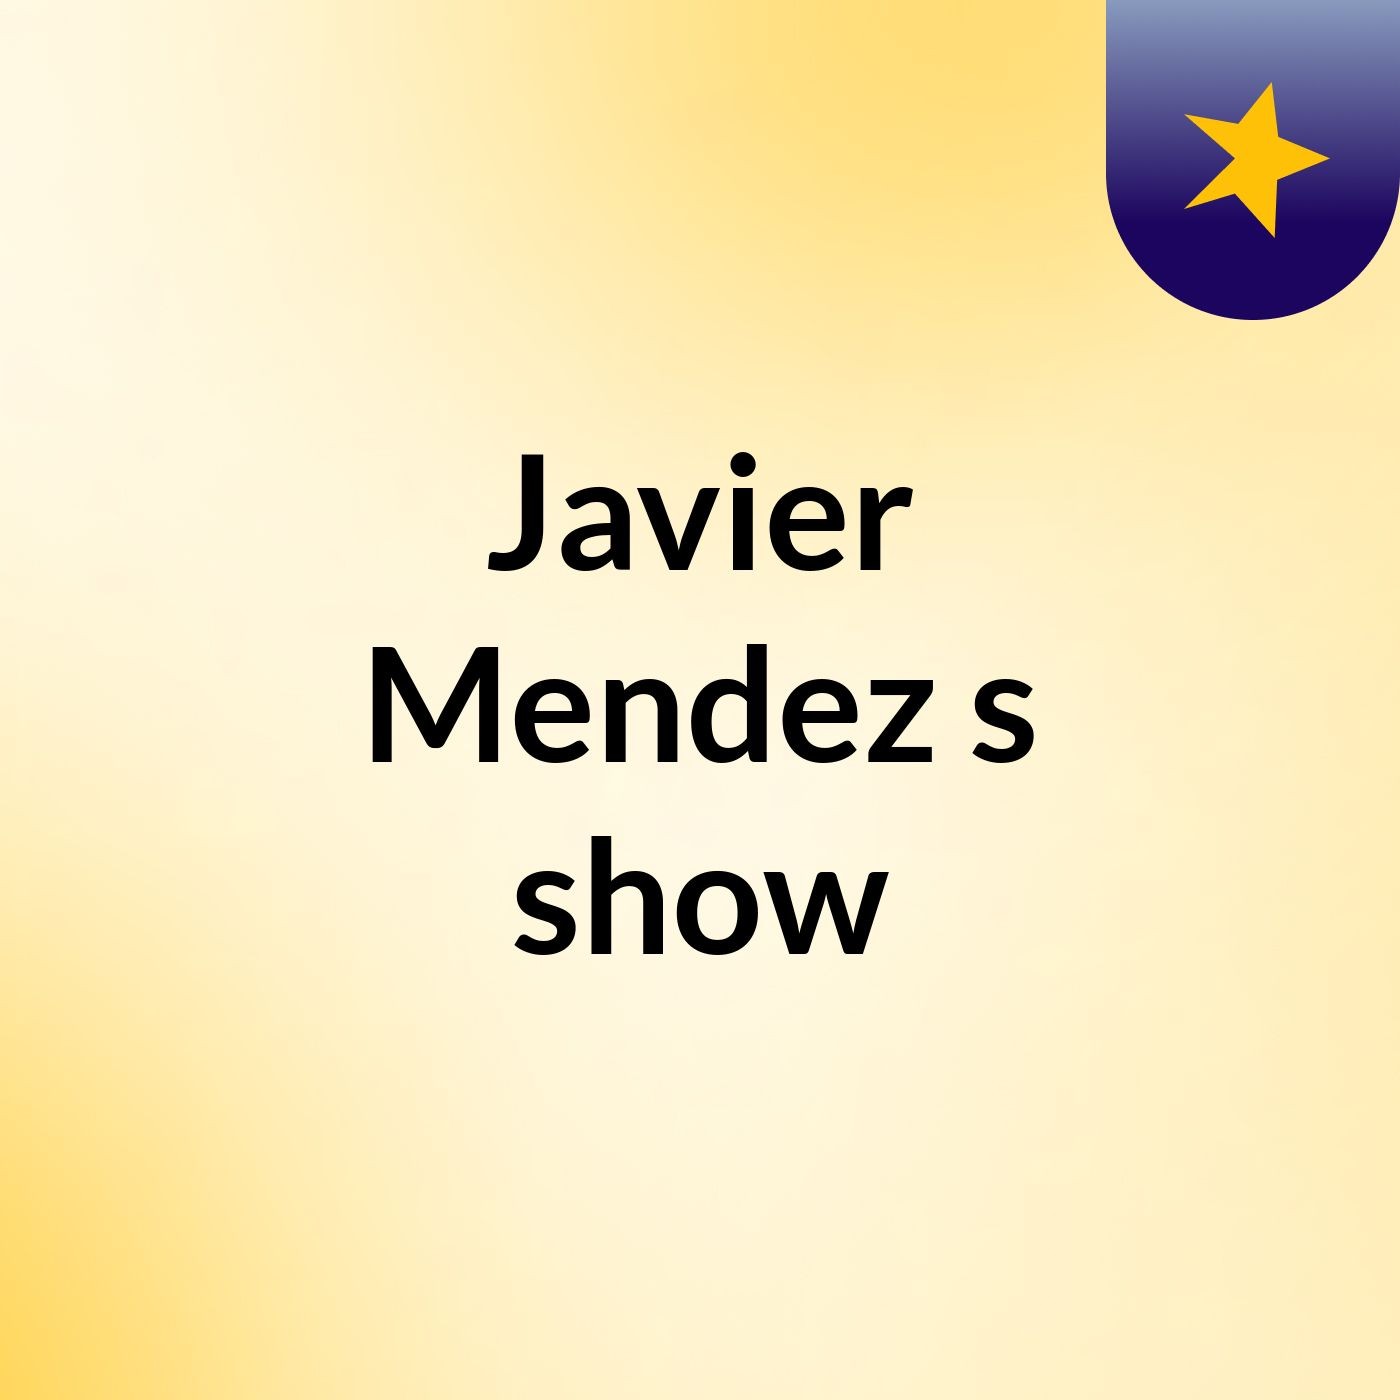 Javier Mendez's show